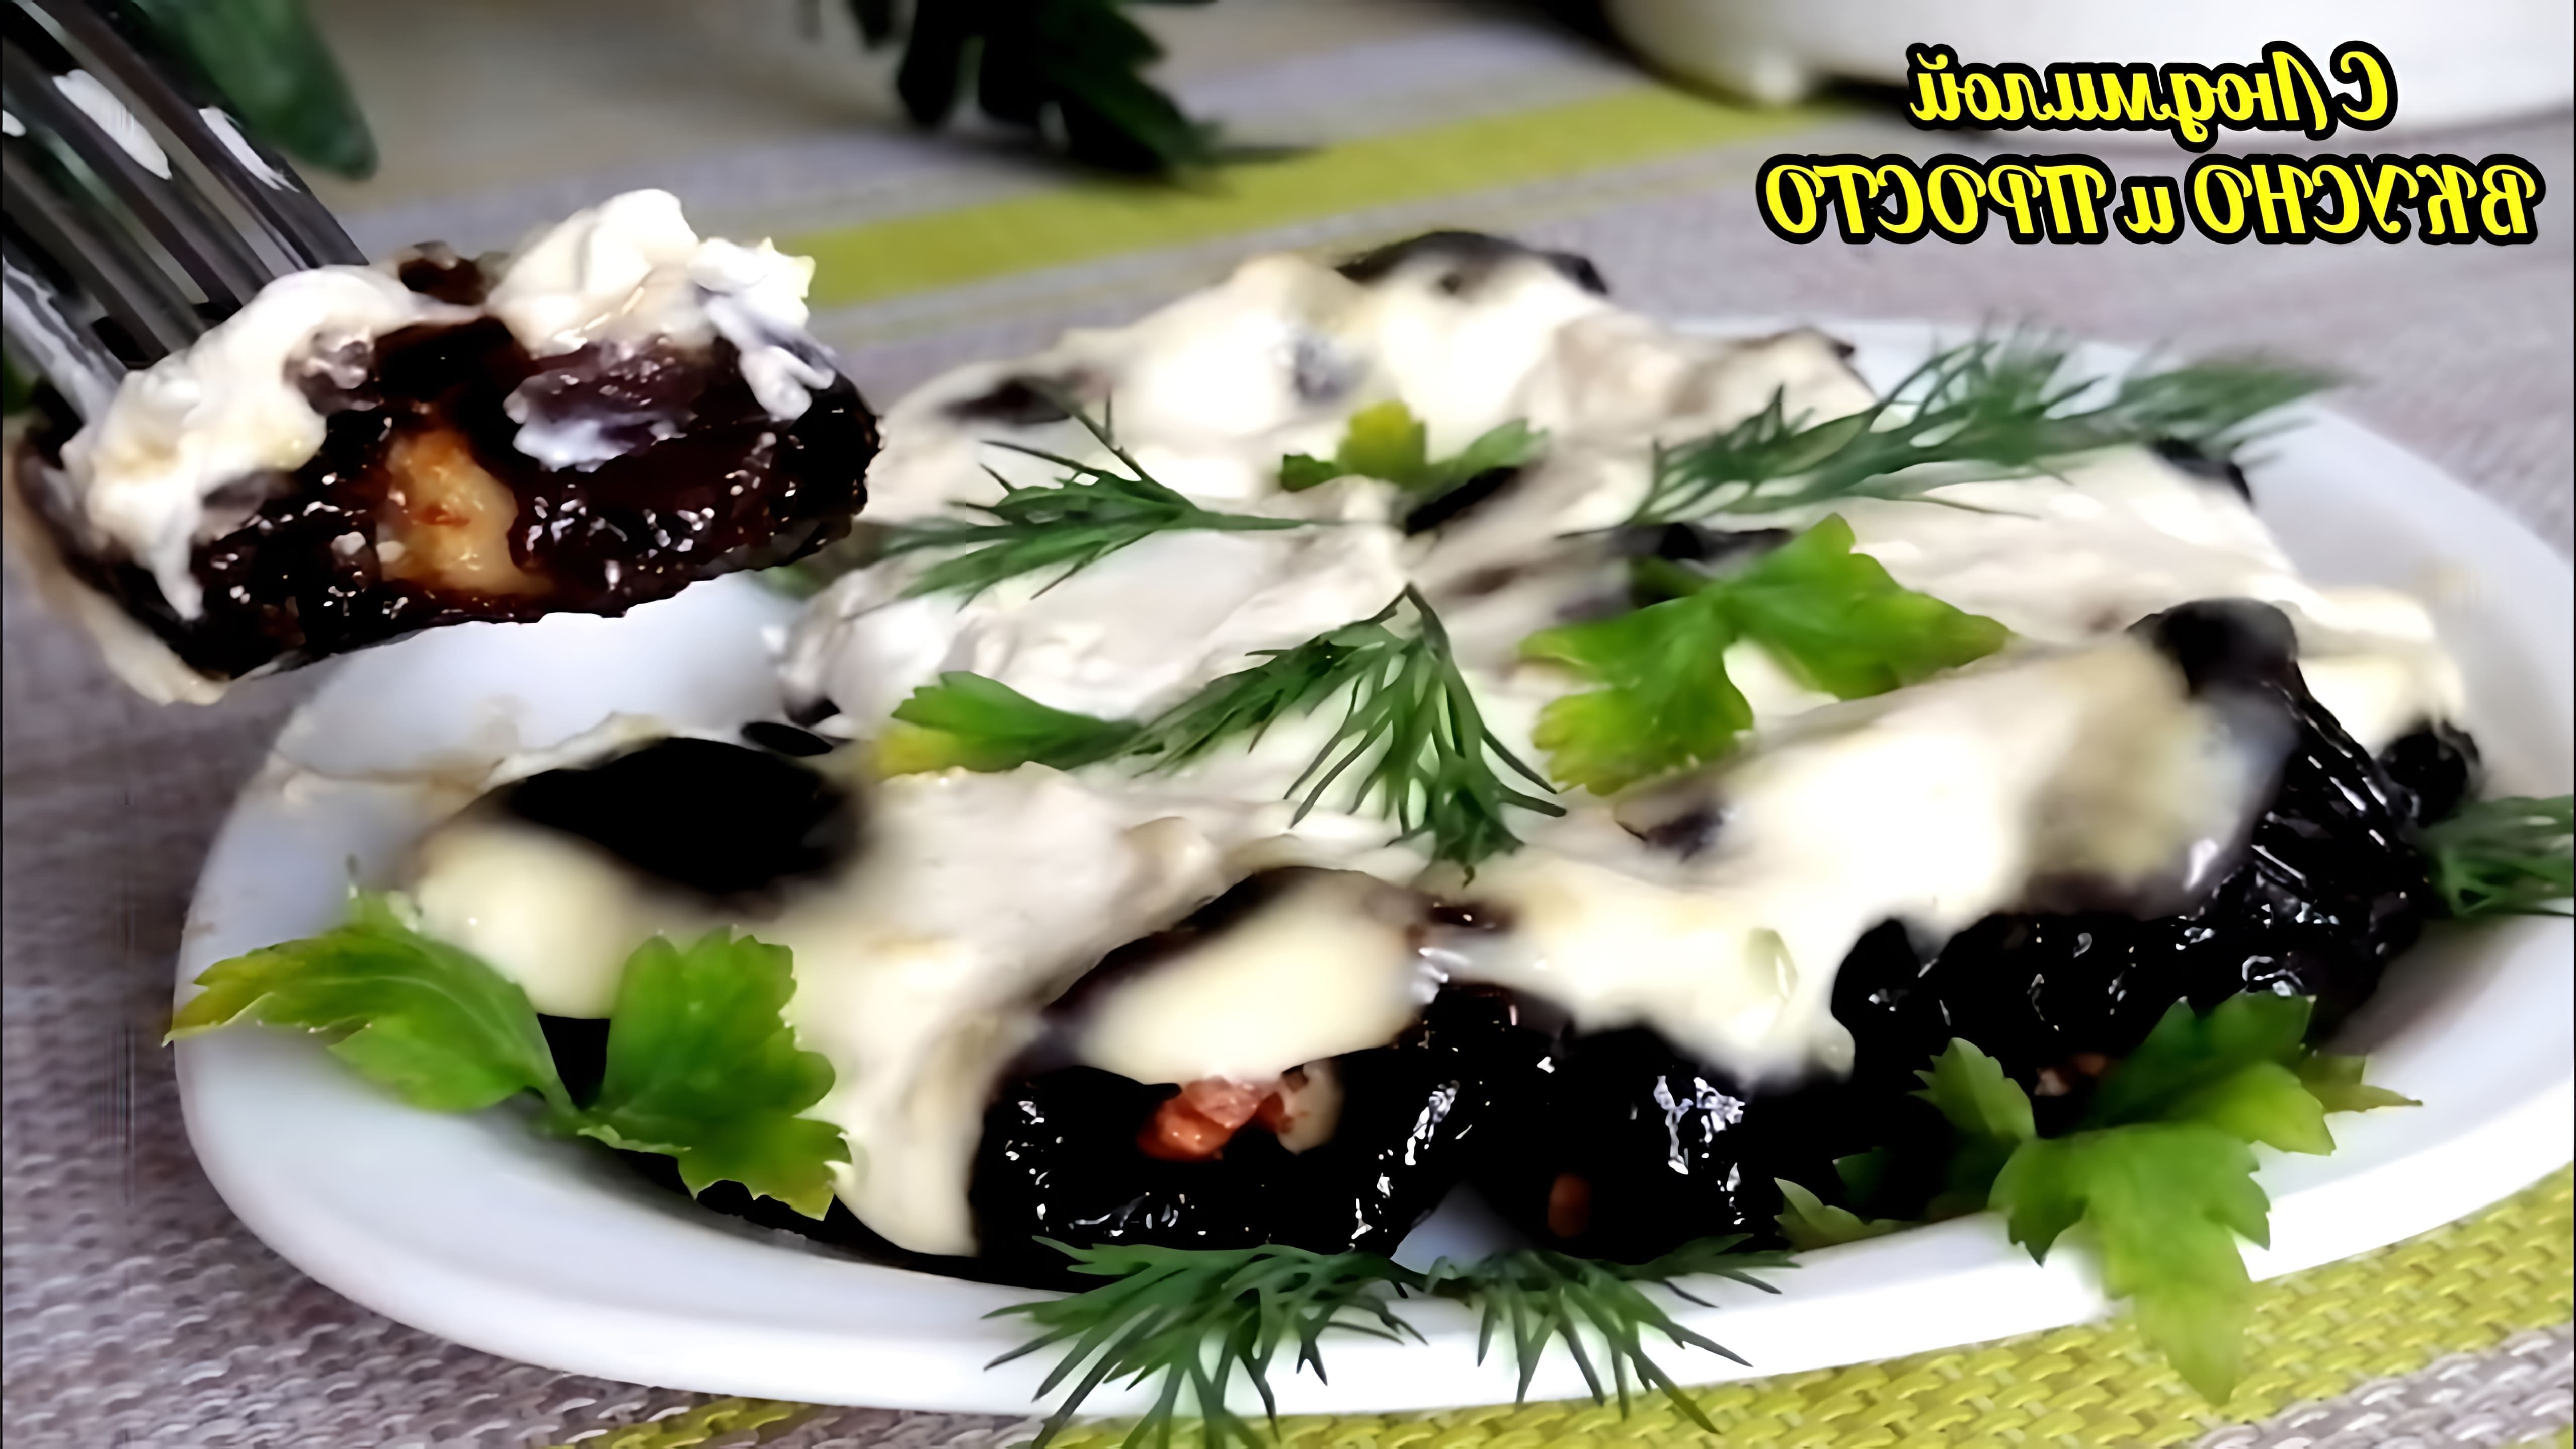 В этом видео демонстрируется рецепт закуски из чернослива с грецким орехом